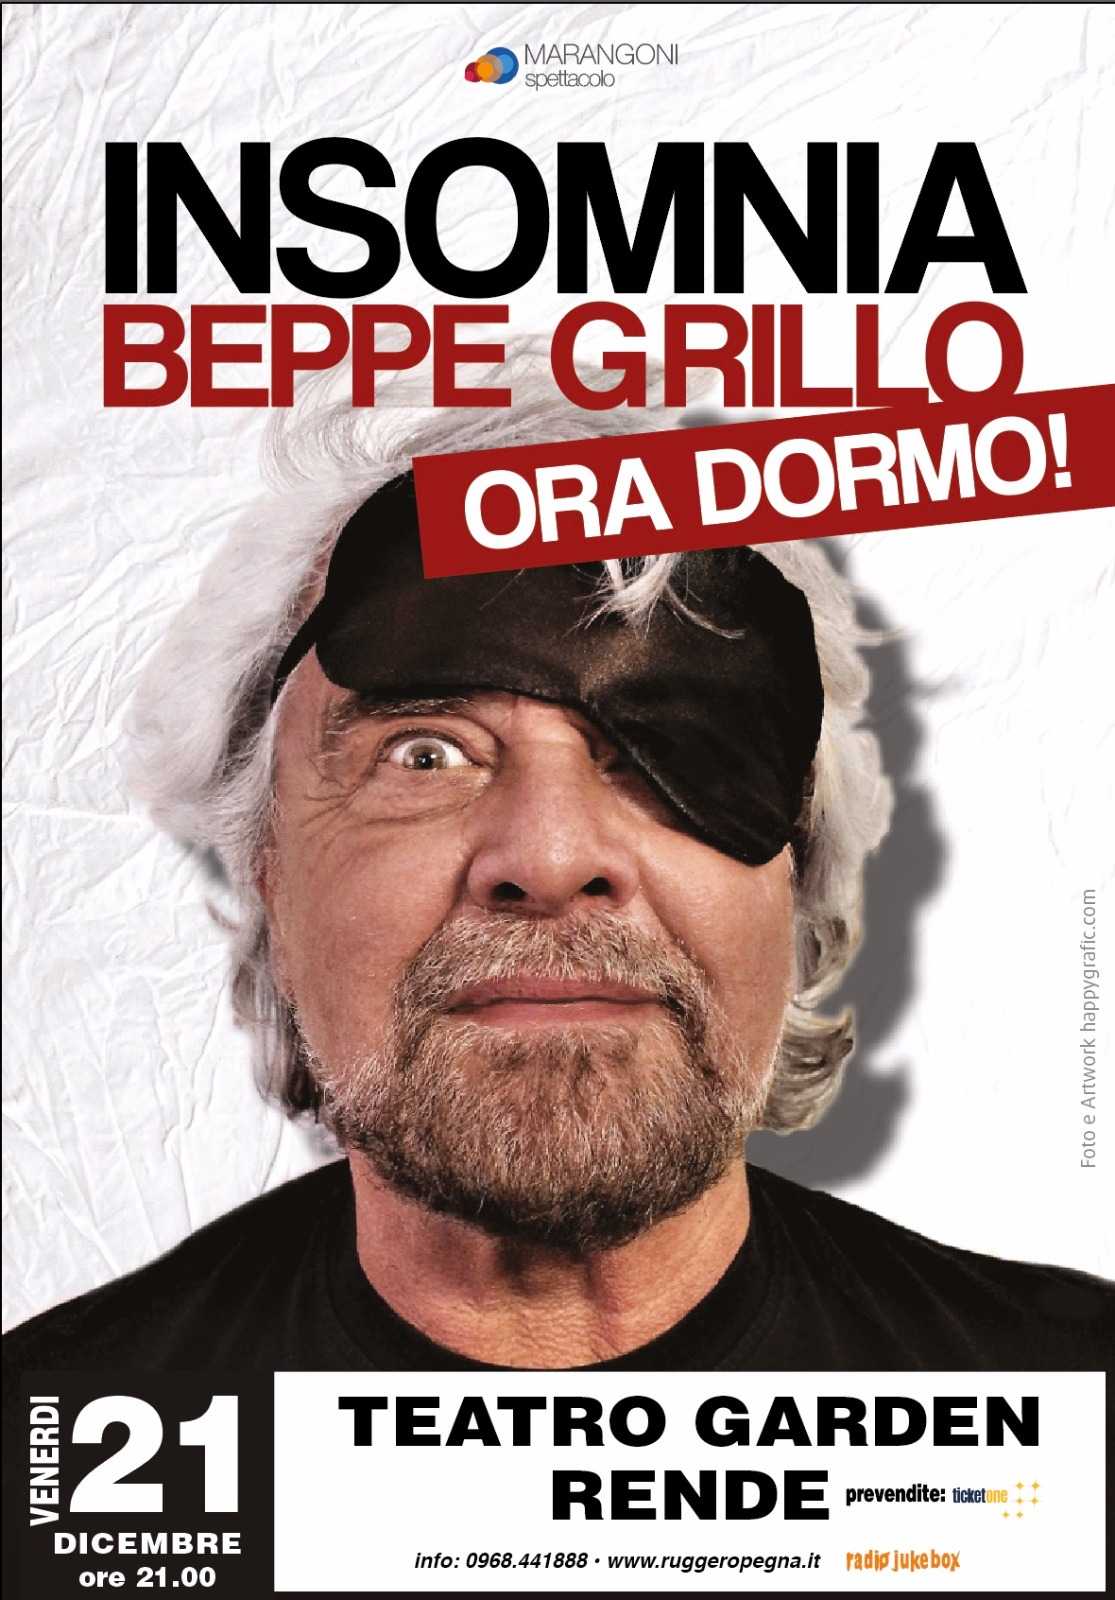 Verso il tutto esaurito per Beppe Grillo che torna in Calabria con il nuovo spettacolo a dicembre